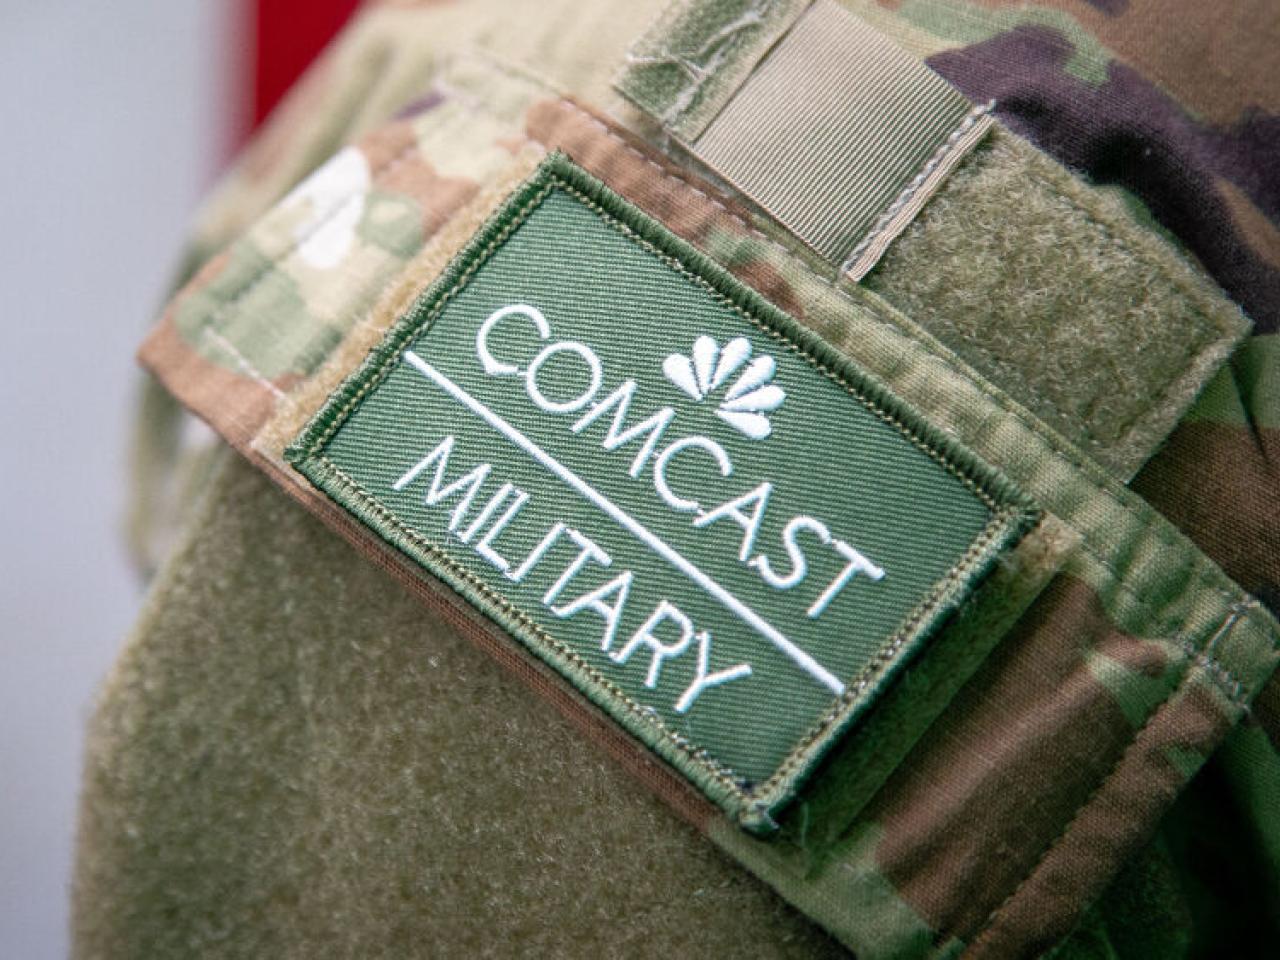 A Comcast military badge 